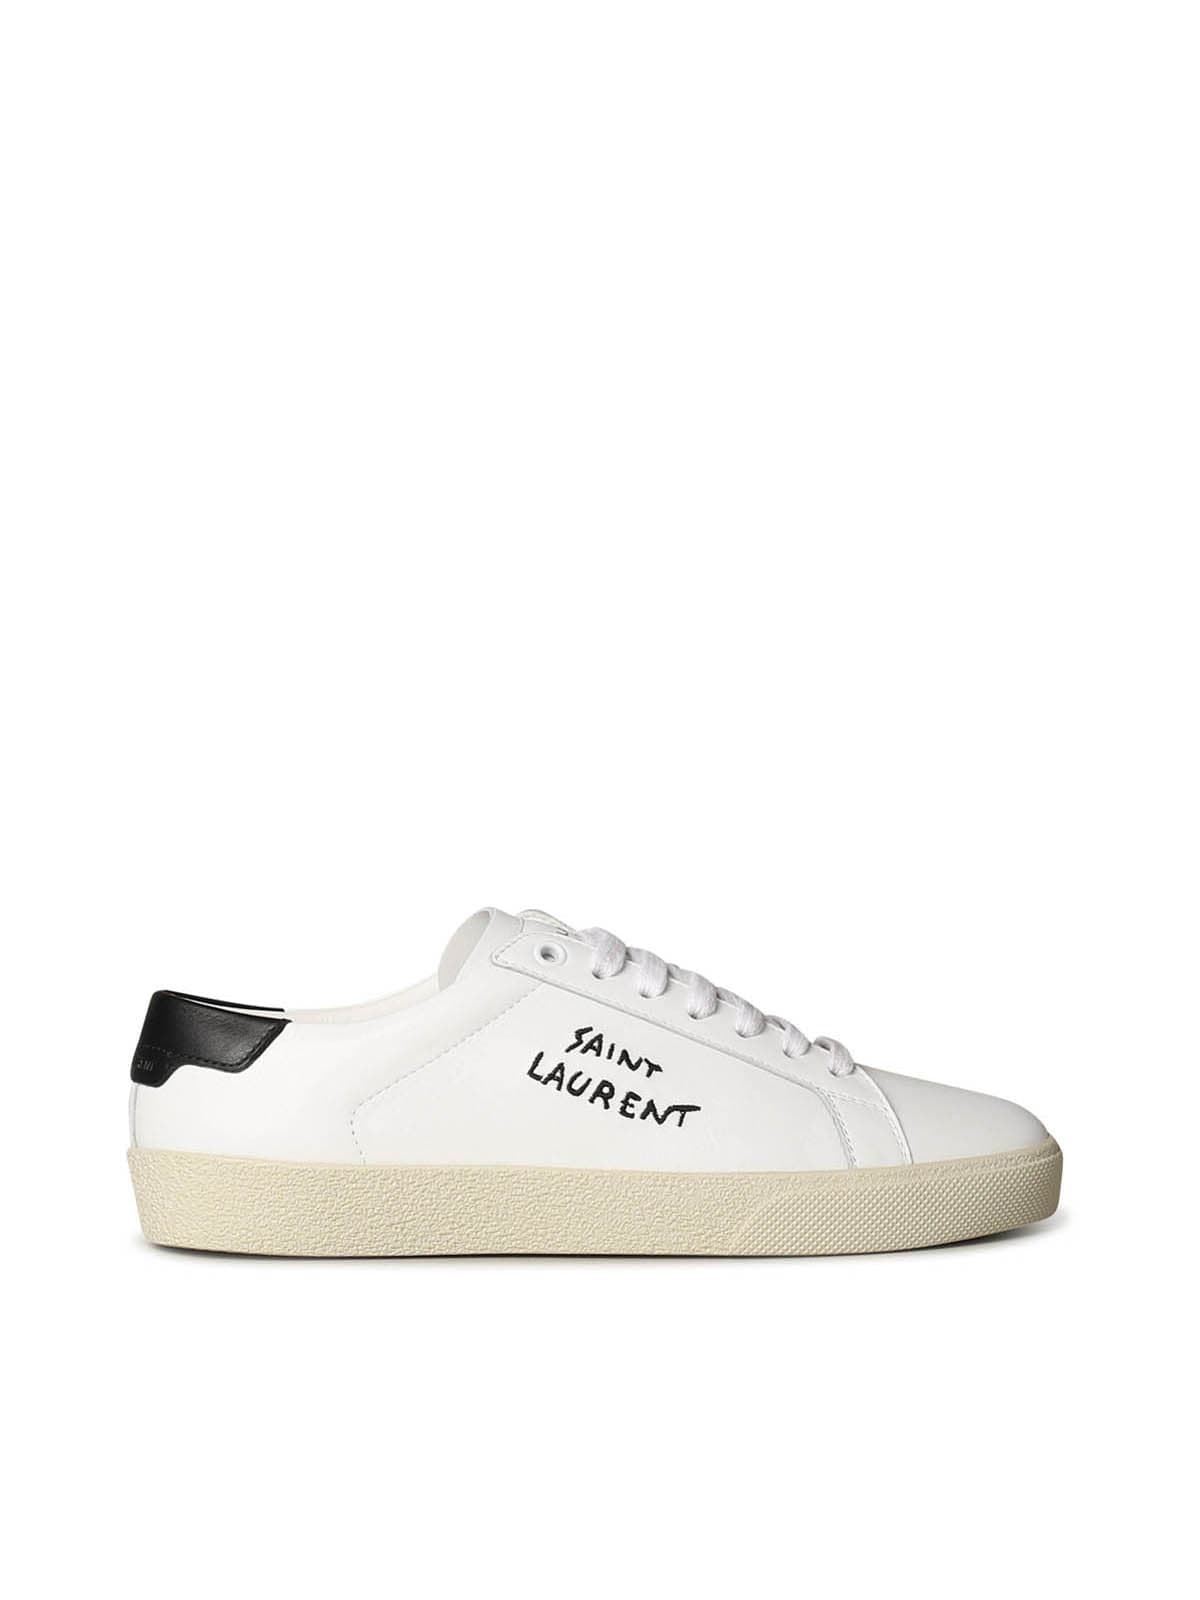 Buy Saint Laurent Sl/06 Signat Sneaker online, shop Saint Laurent shoes with free shipping